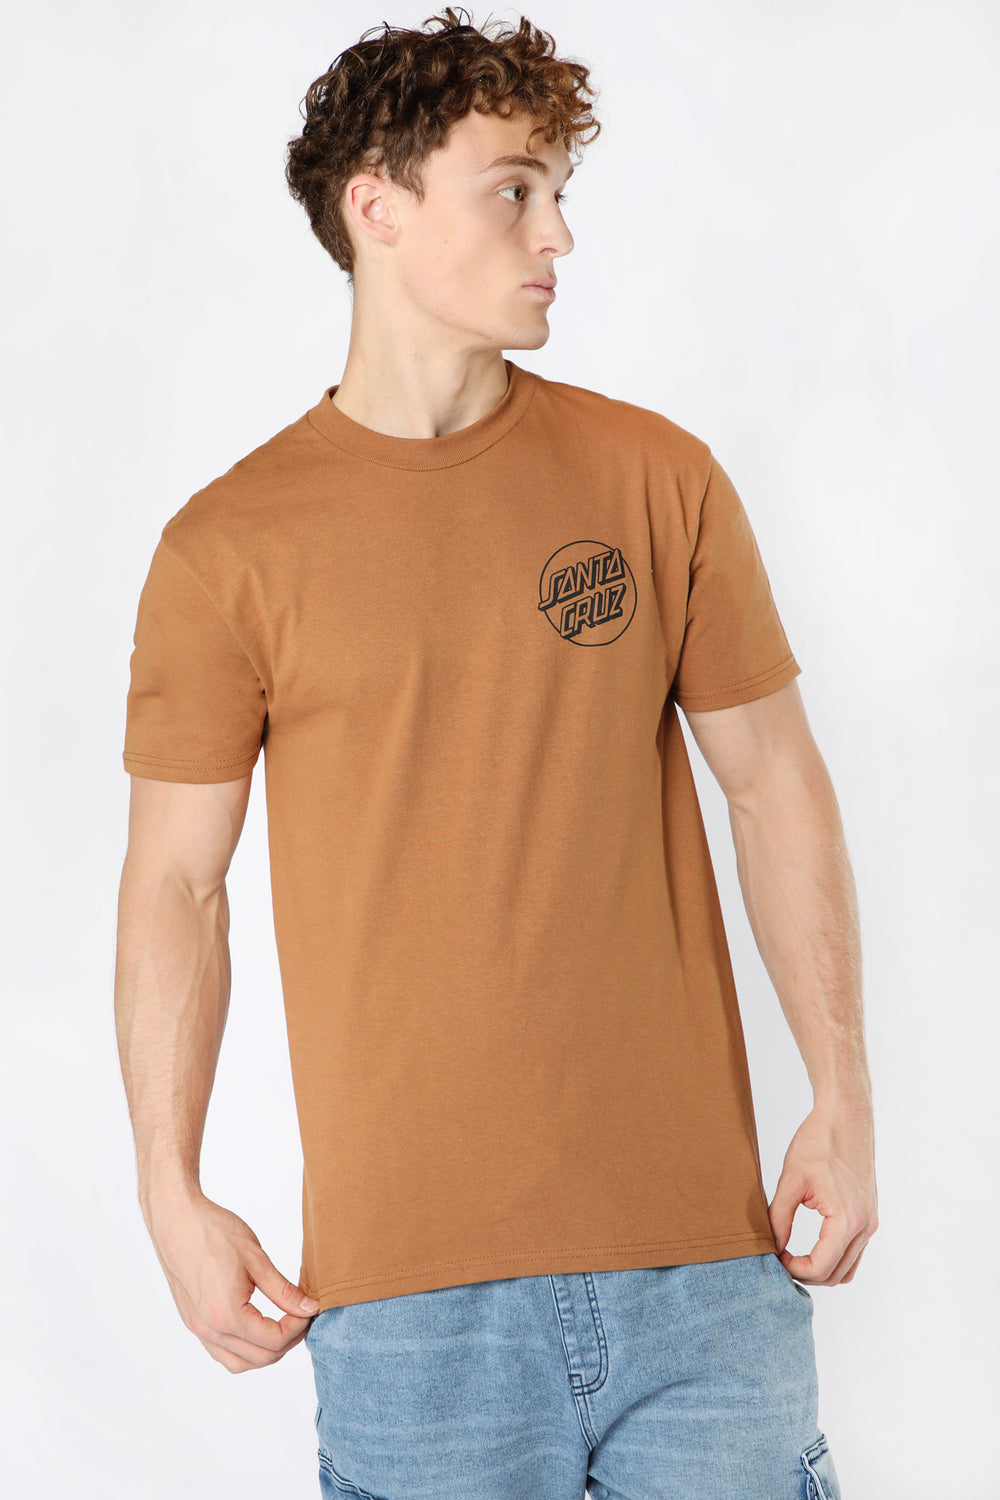 Santa Cruz Opus Dot T-Shirt Brown